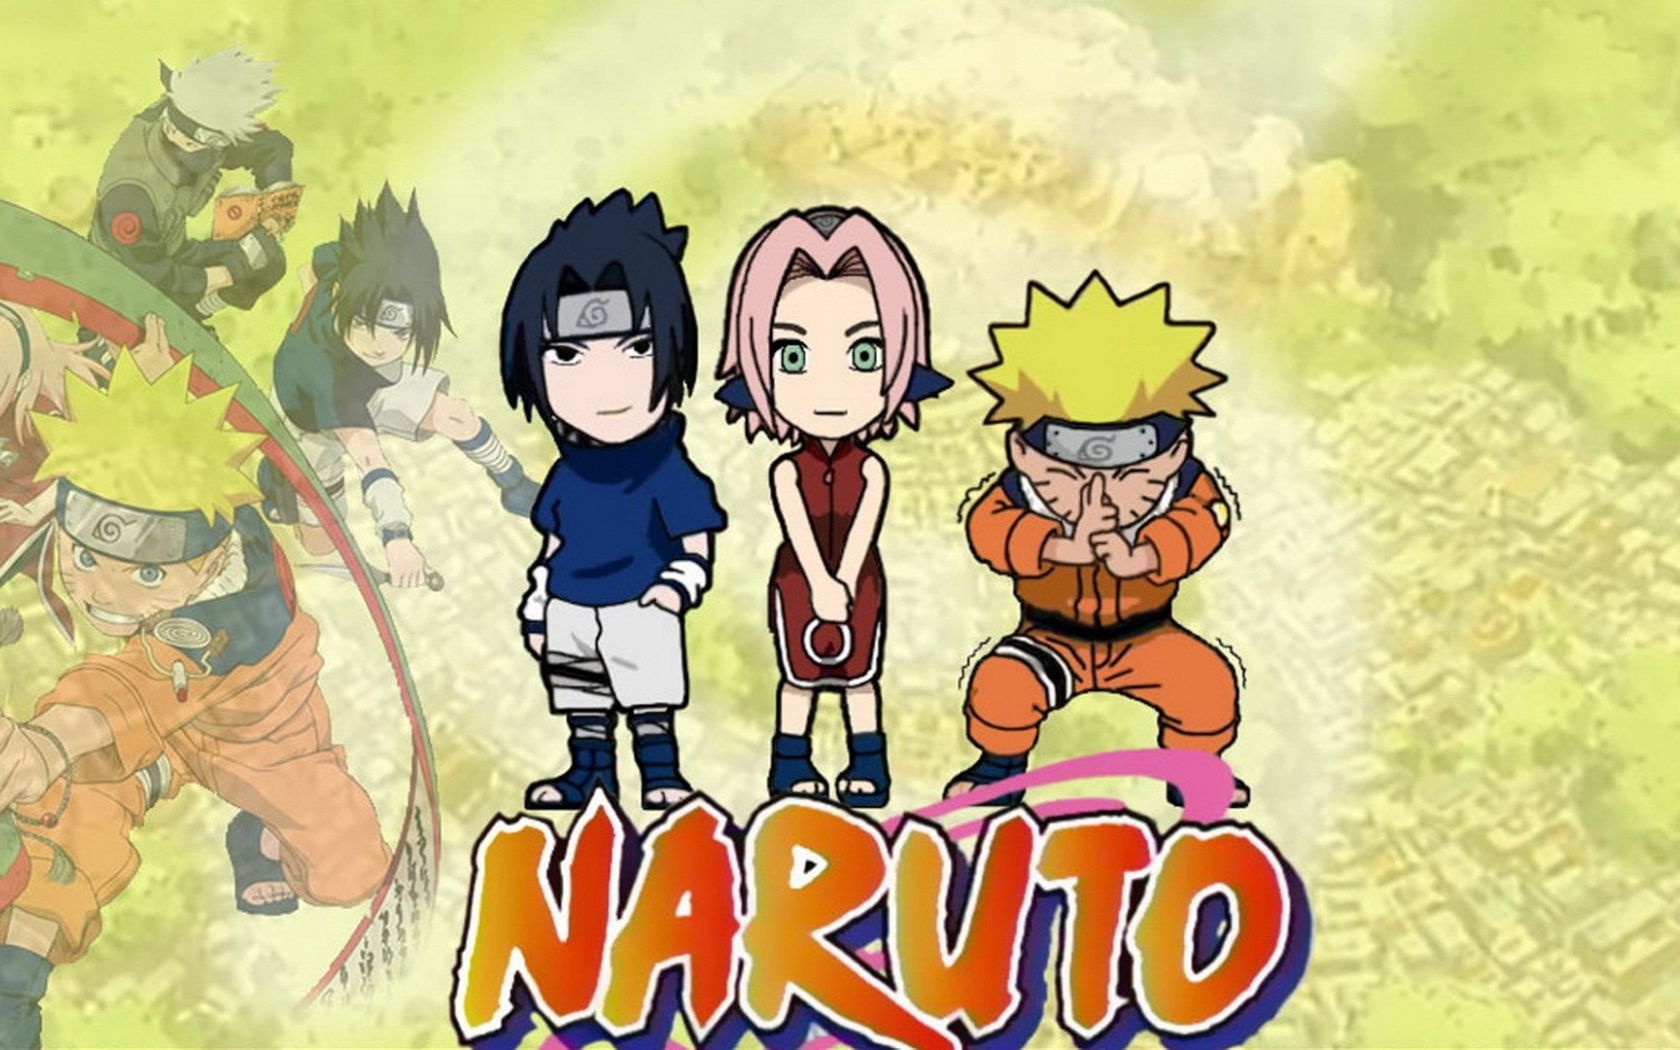 Free download Naruto main characters wallpaper Anime Wallpaper Hi